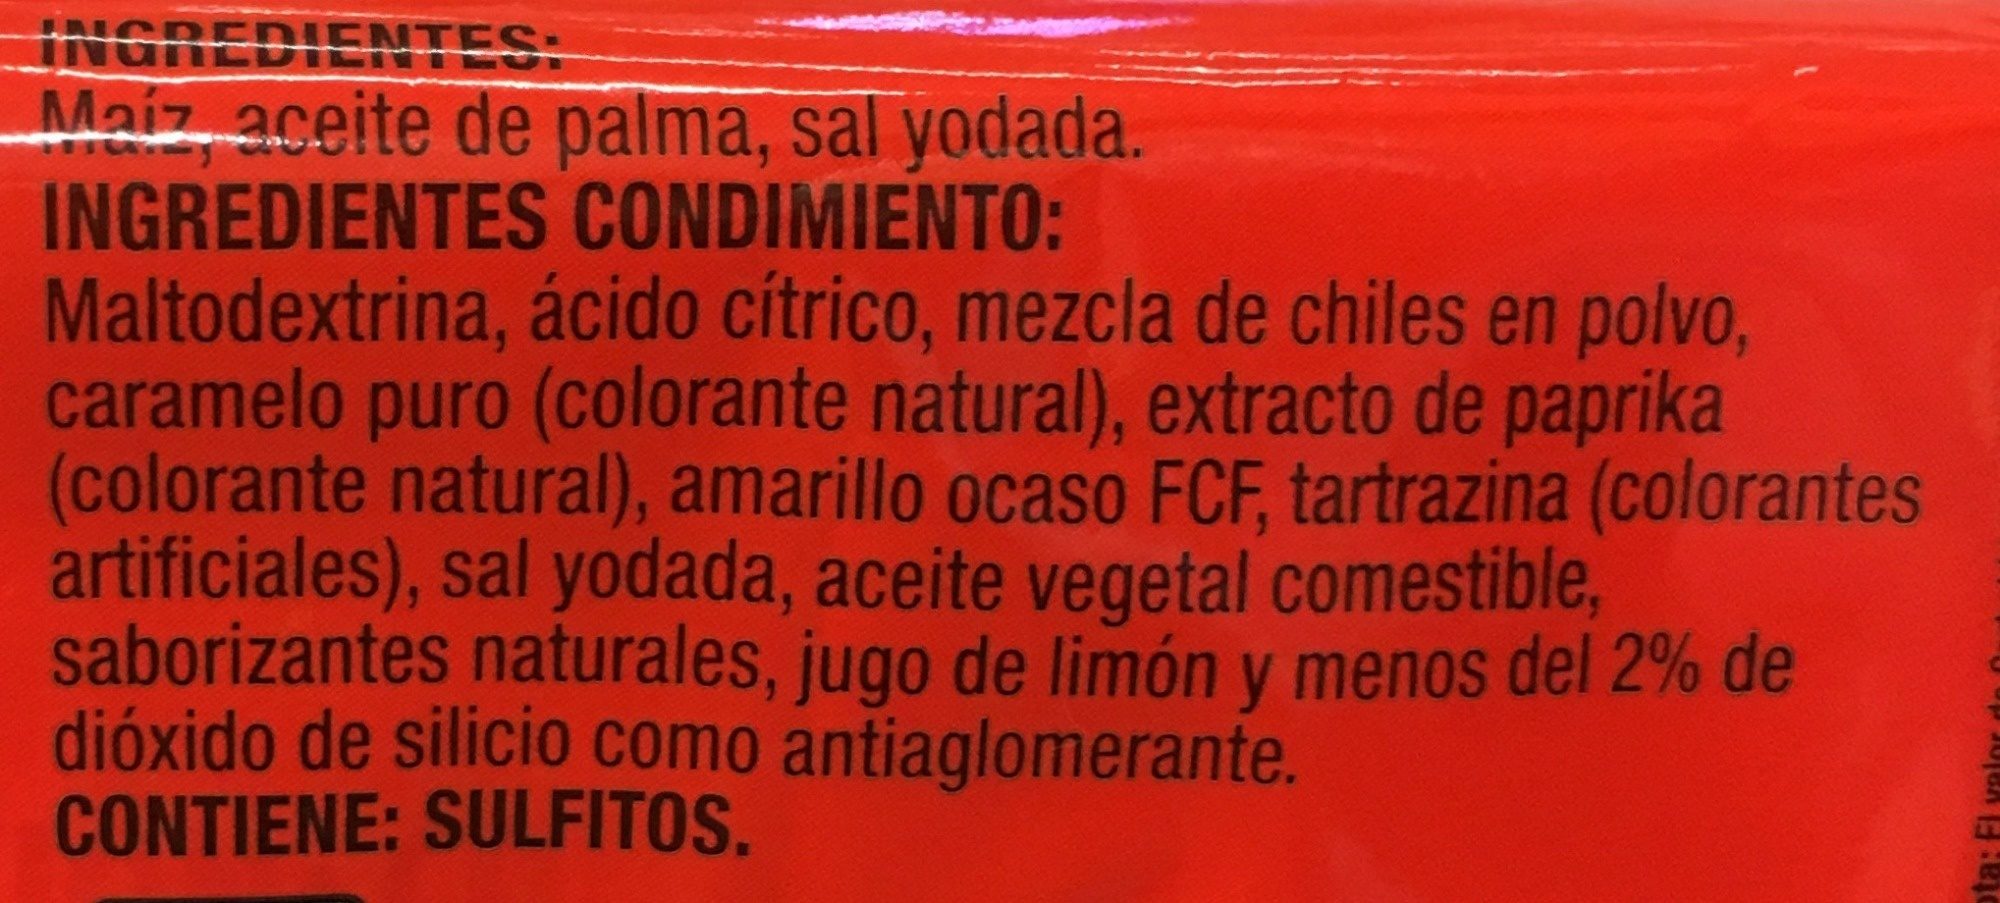 Act II sabor Chile y Limón - Ingredients - es